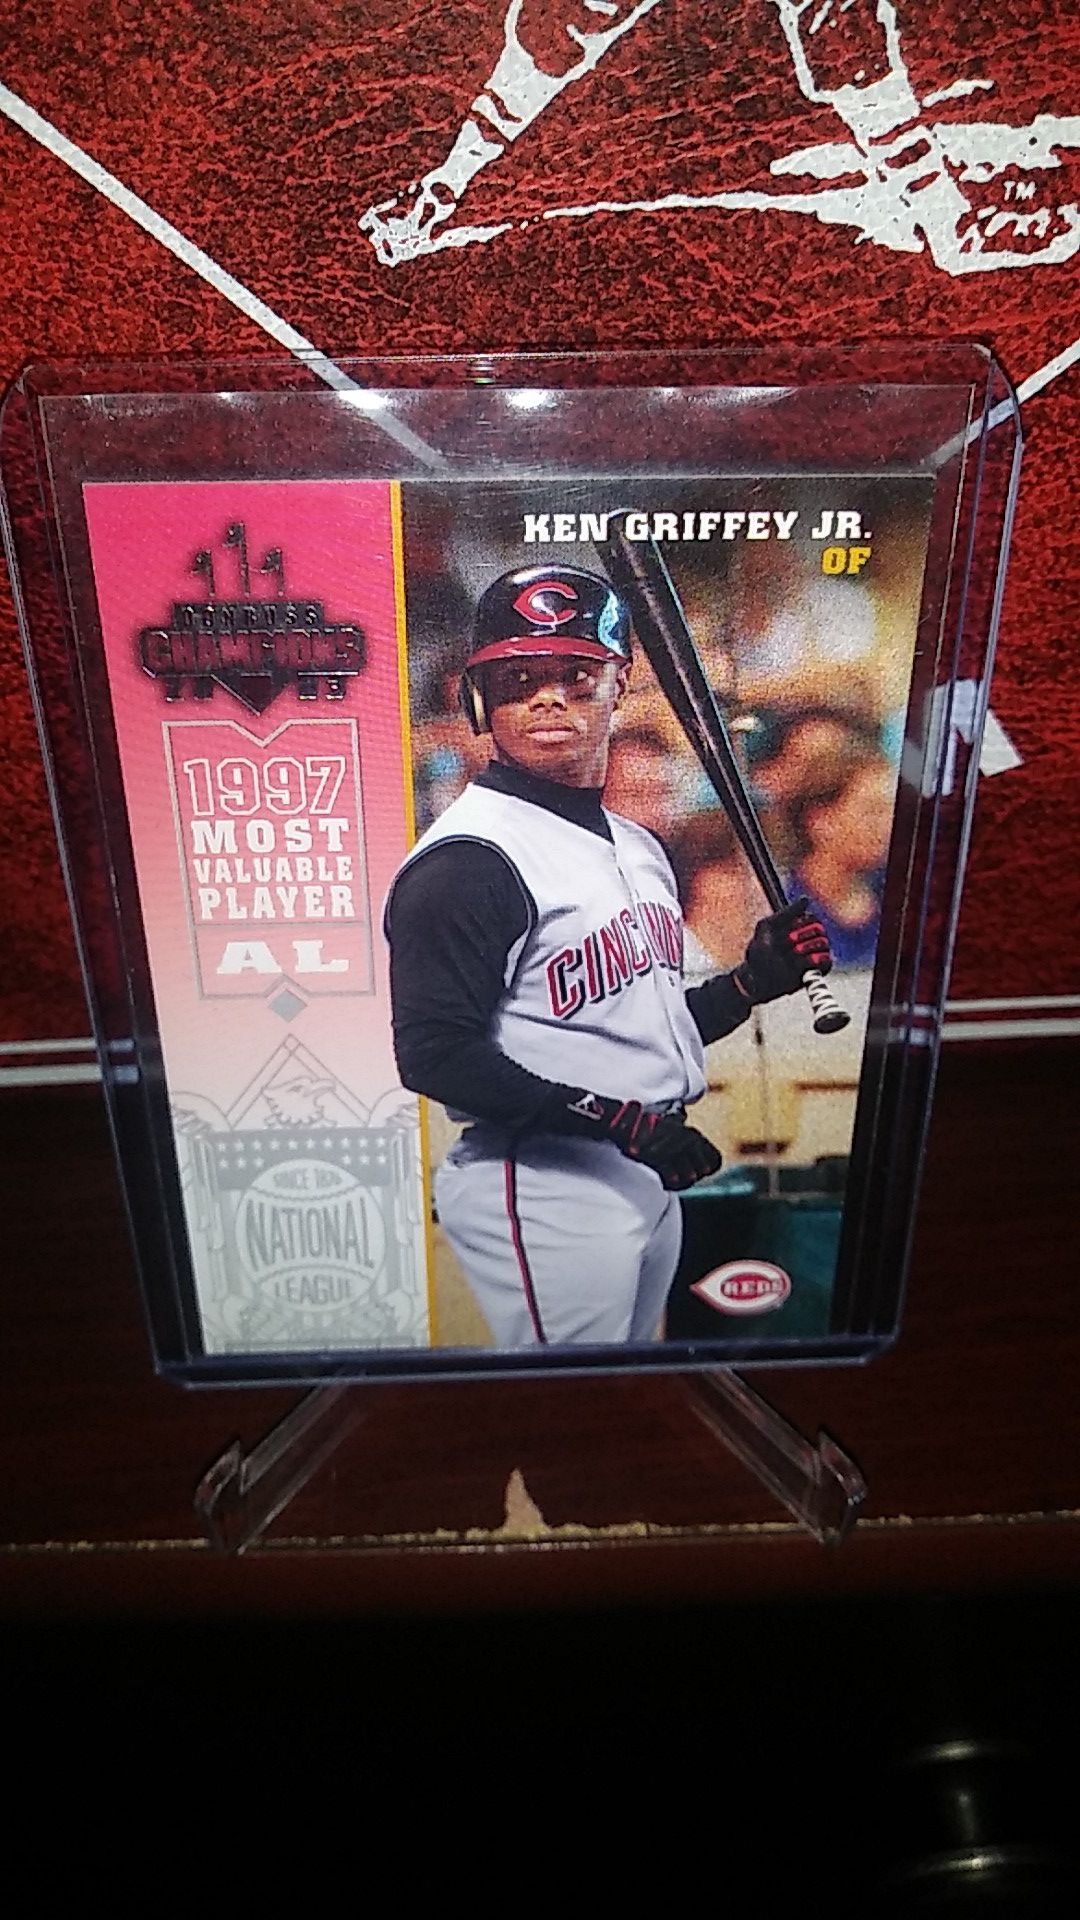 2003 Donruss Baseball! Hot Ken Griffey Jr '97 MVP AL' Card!